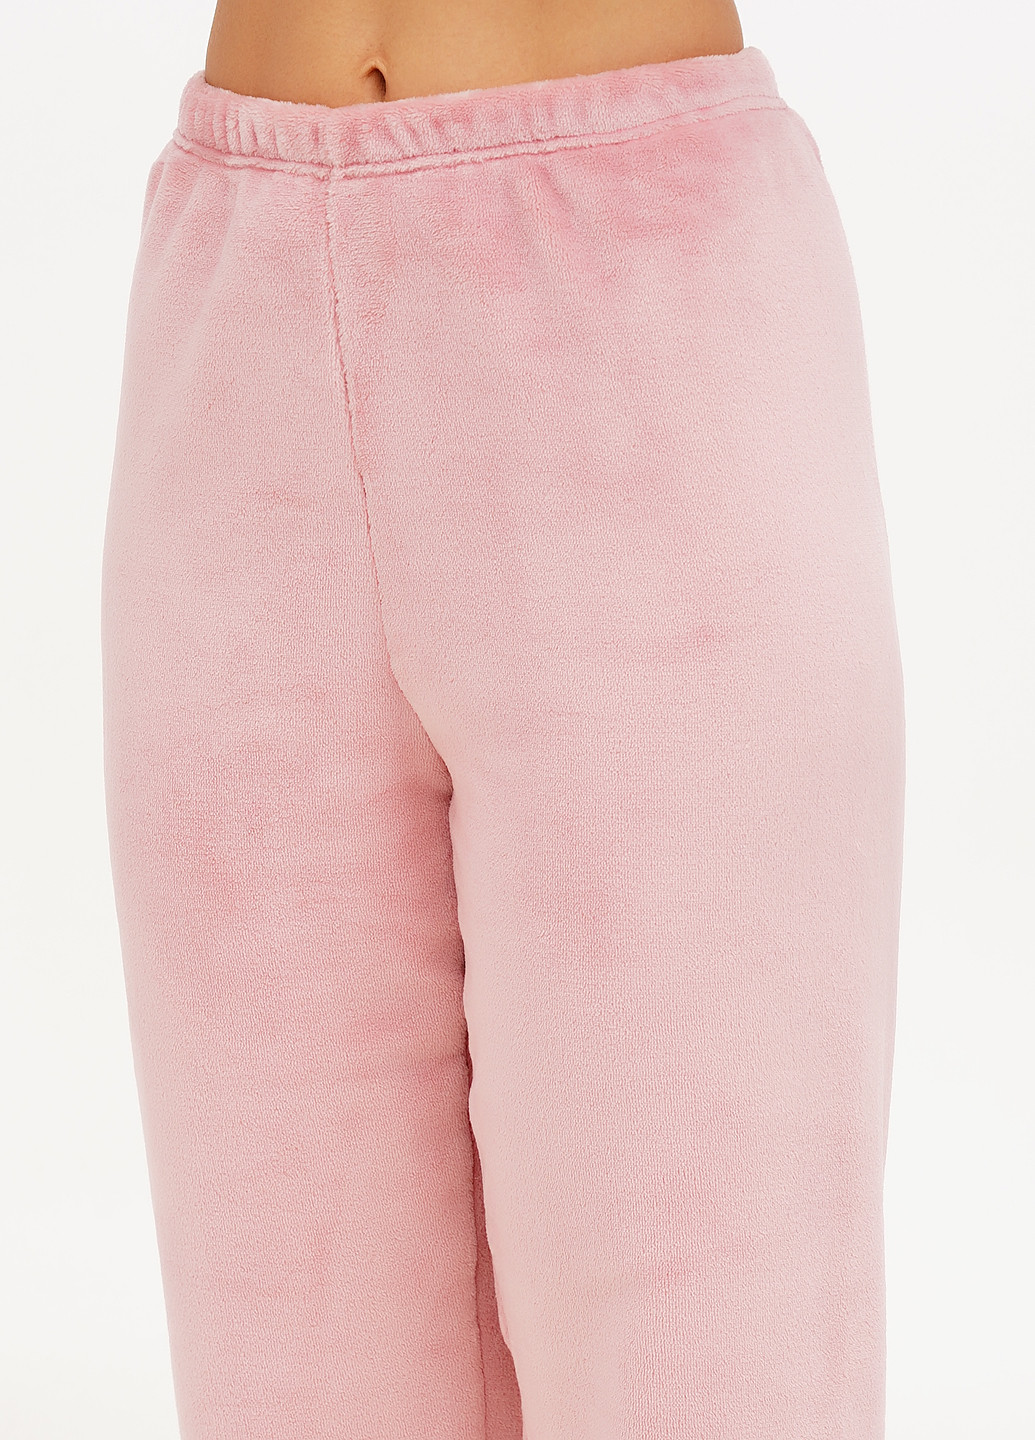 Светло-розовая всесезон пижама (лонгслив, брюки) лонгслив + брюки Aniele